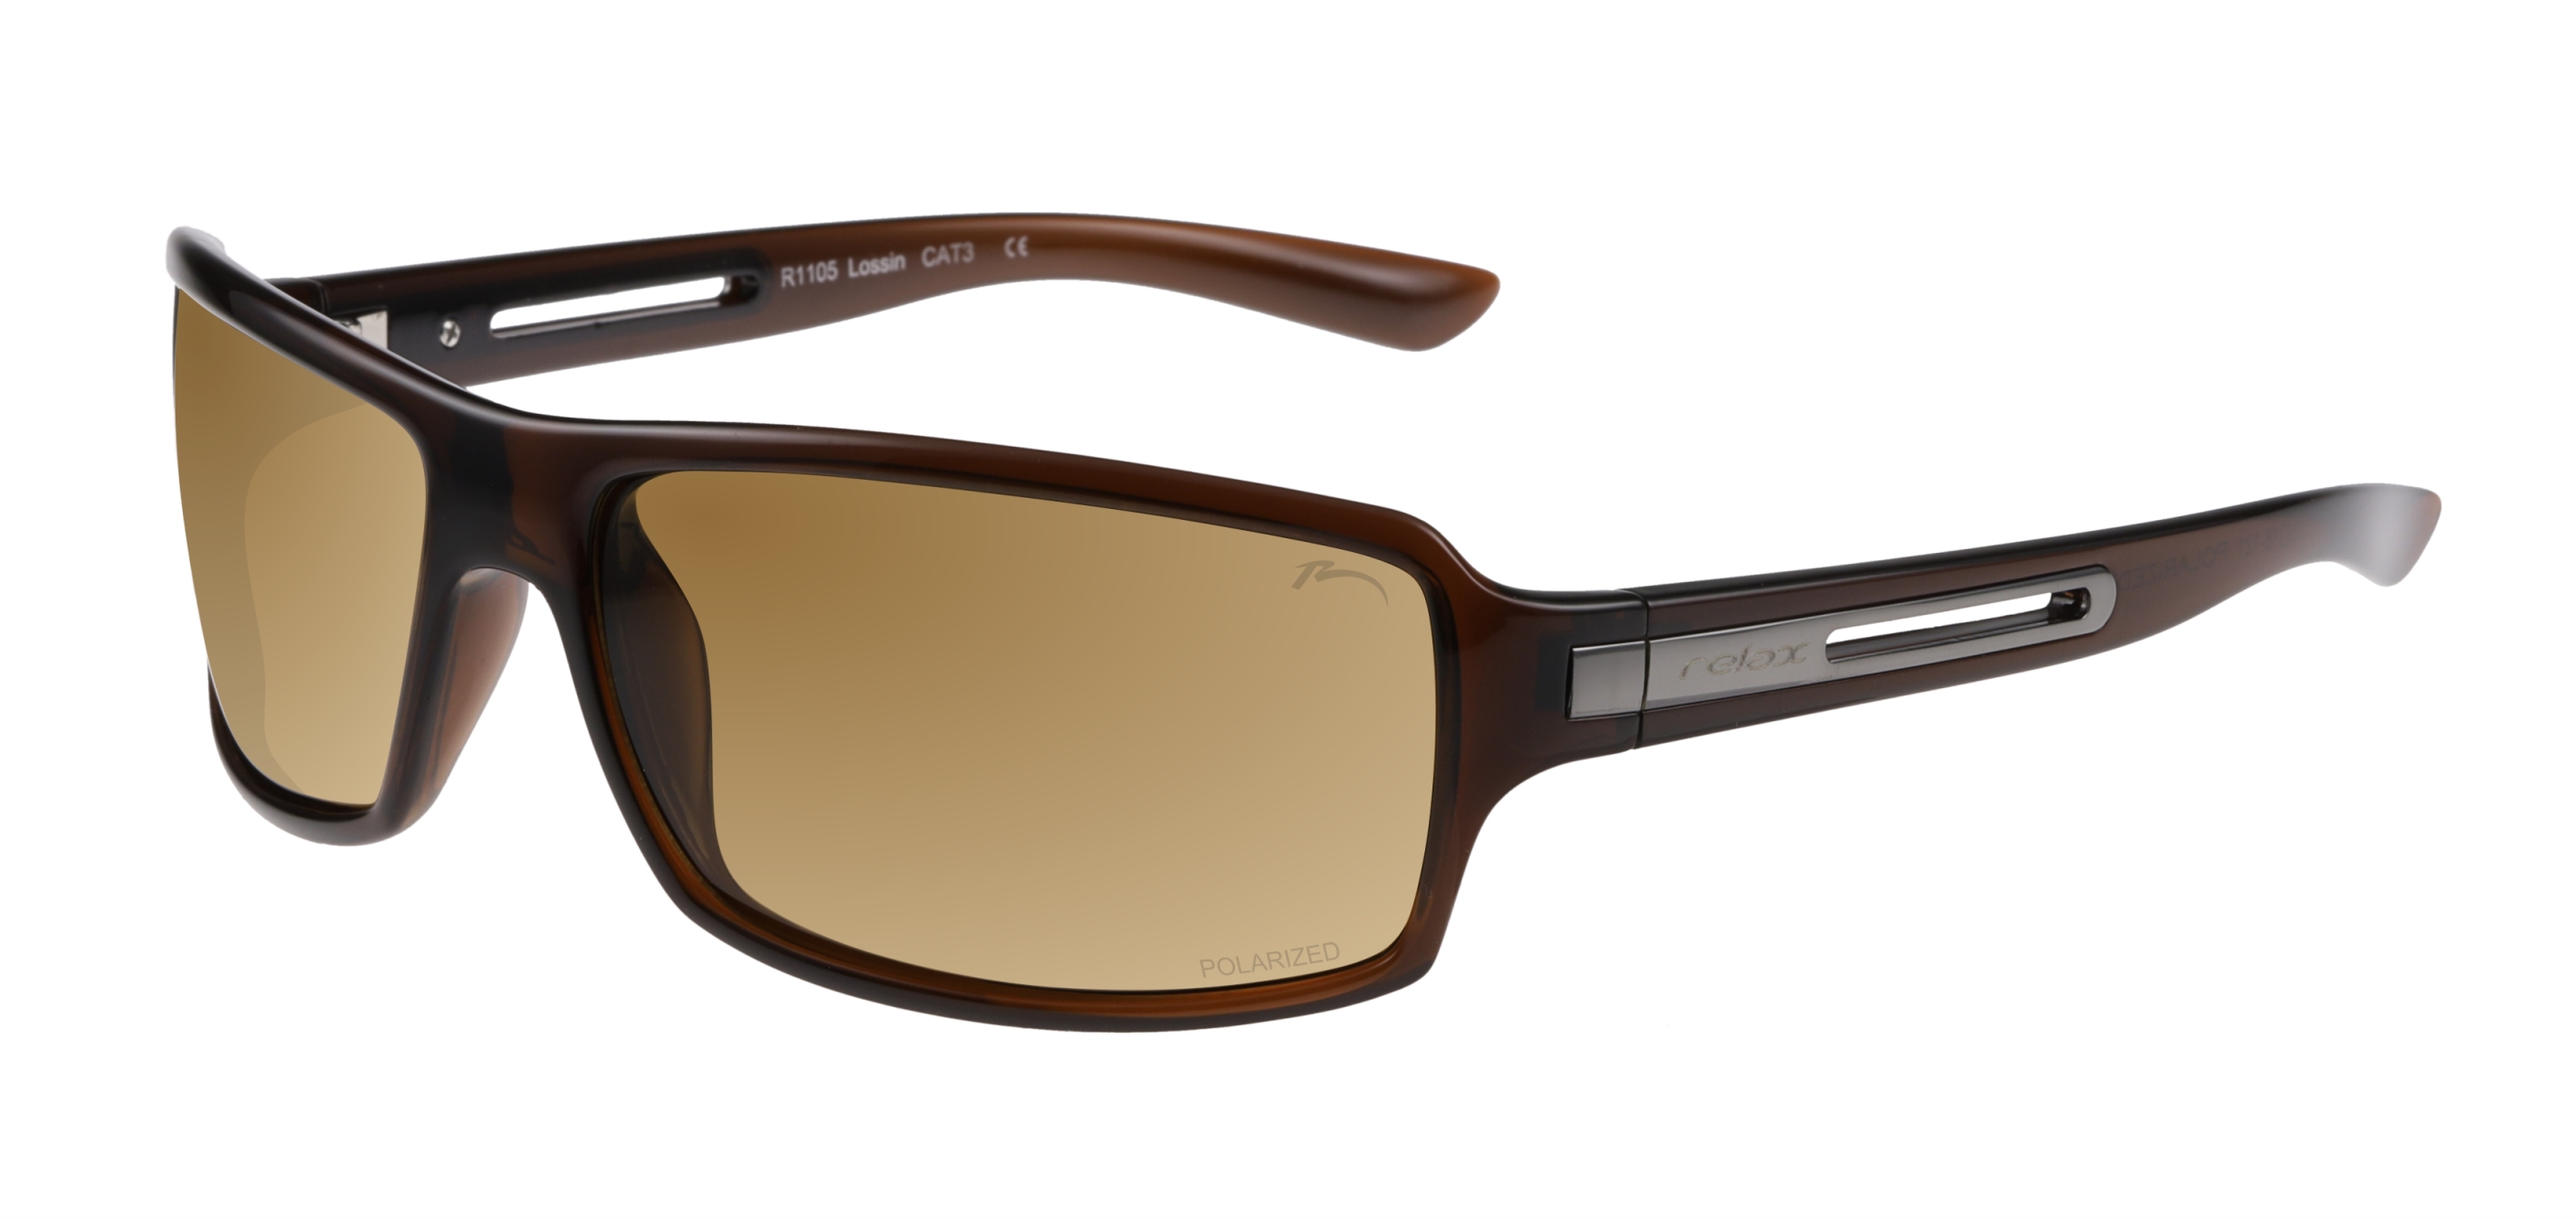 Polarized sunglasses  Relax Lossin R1105